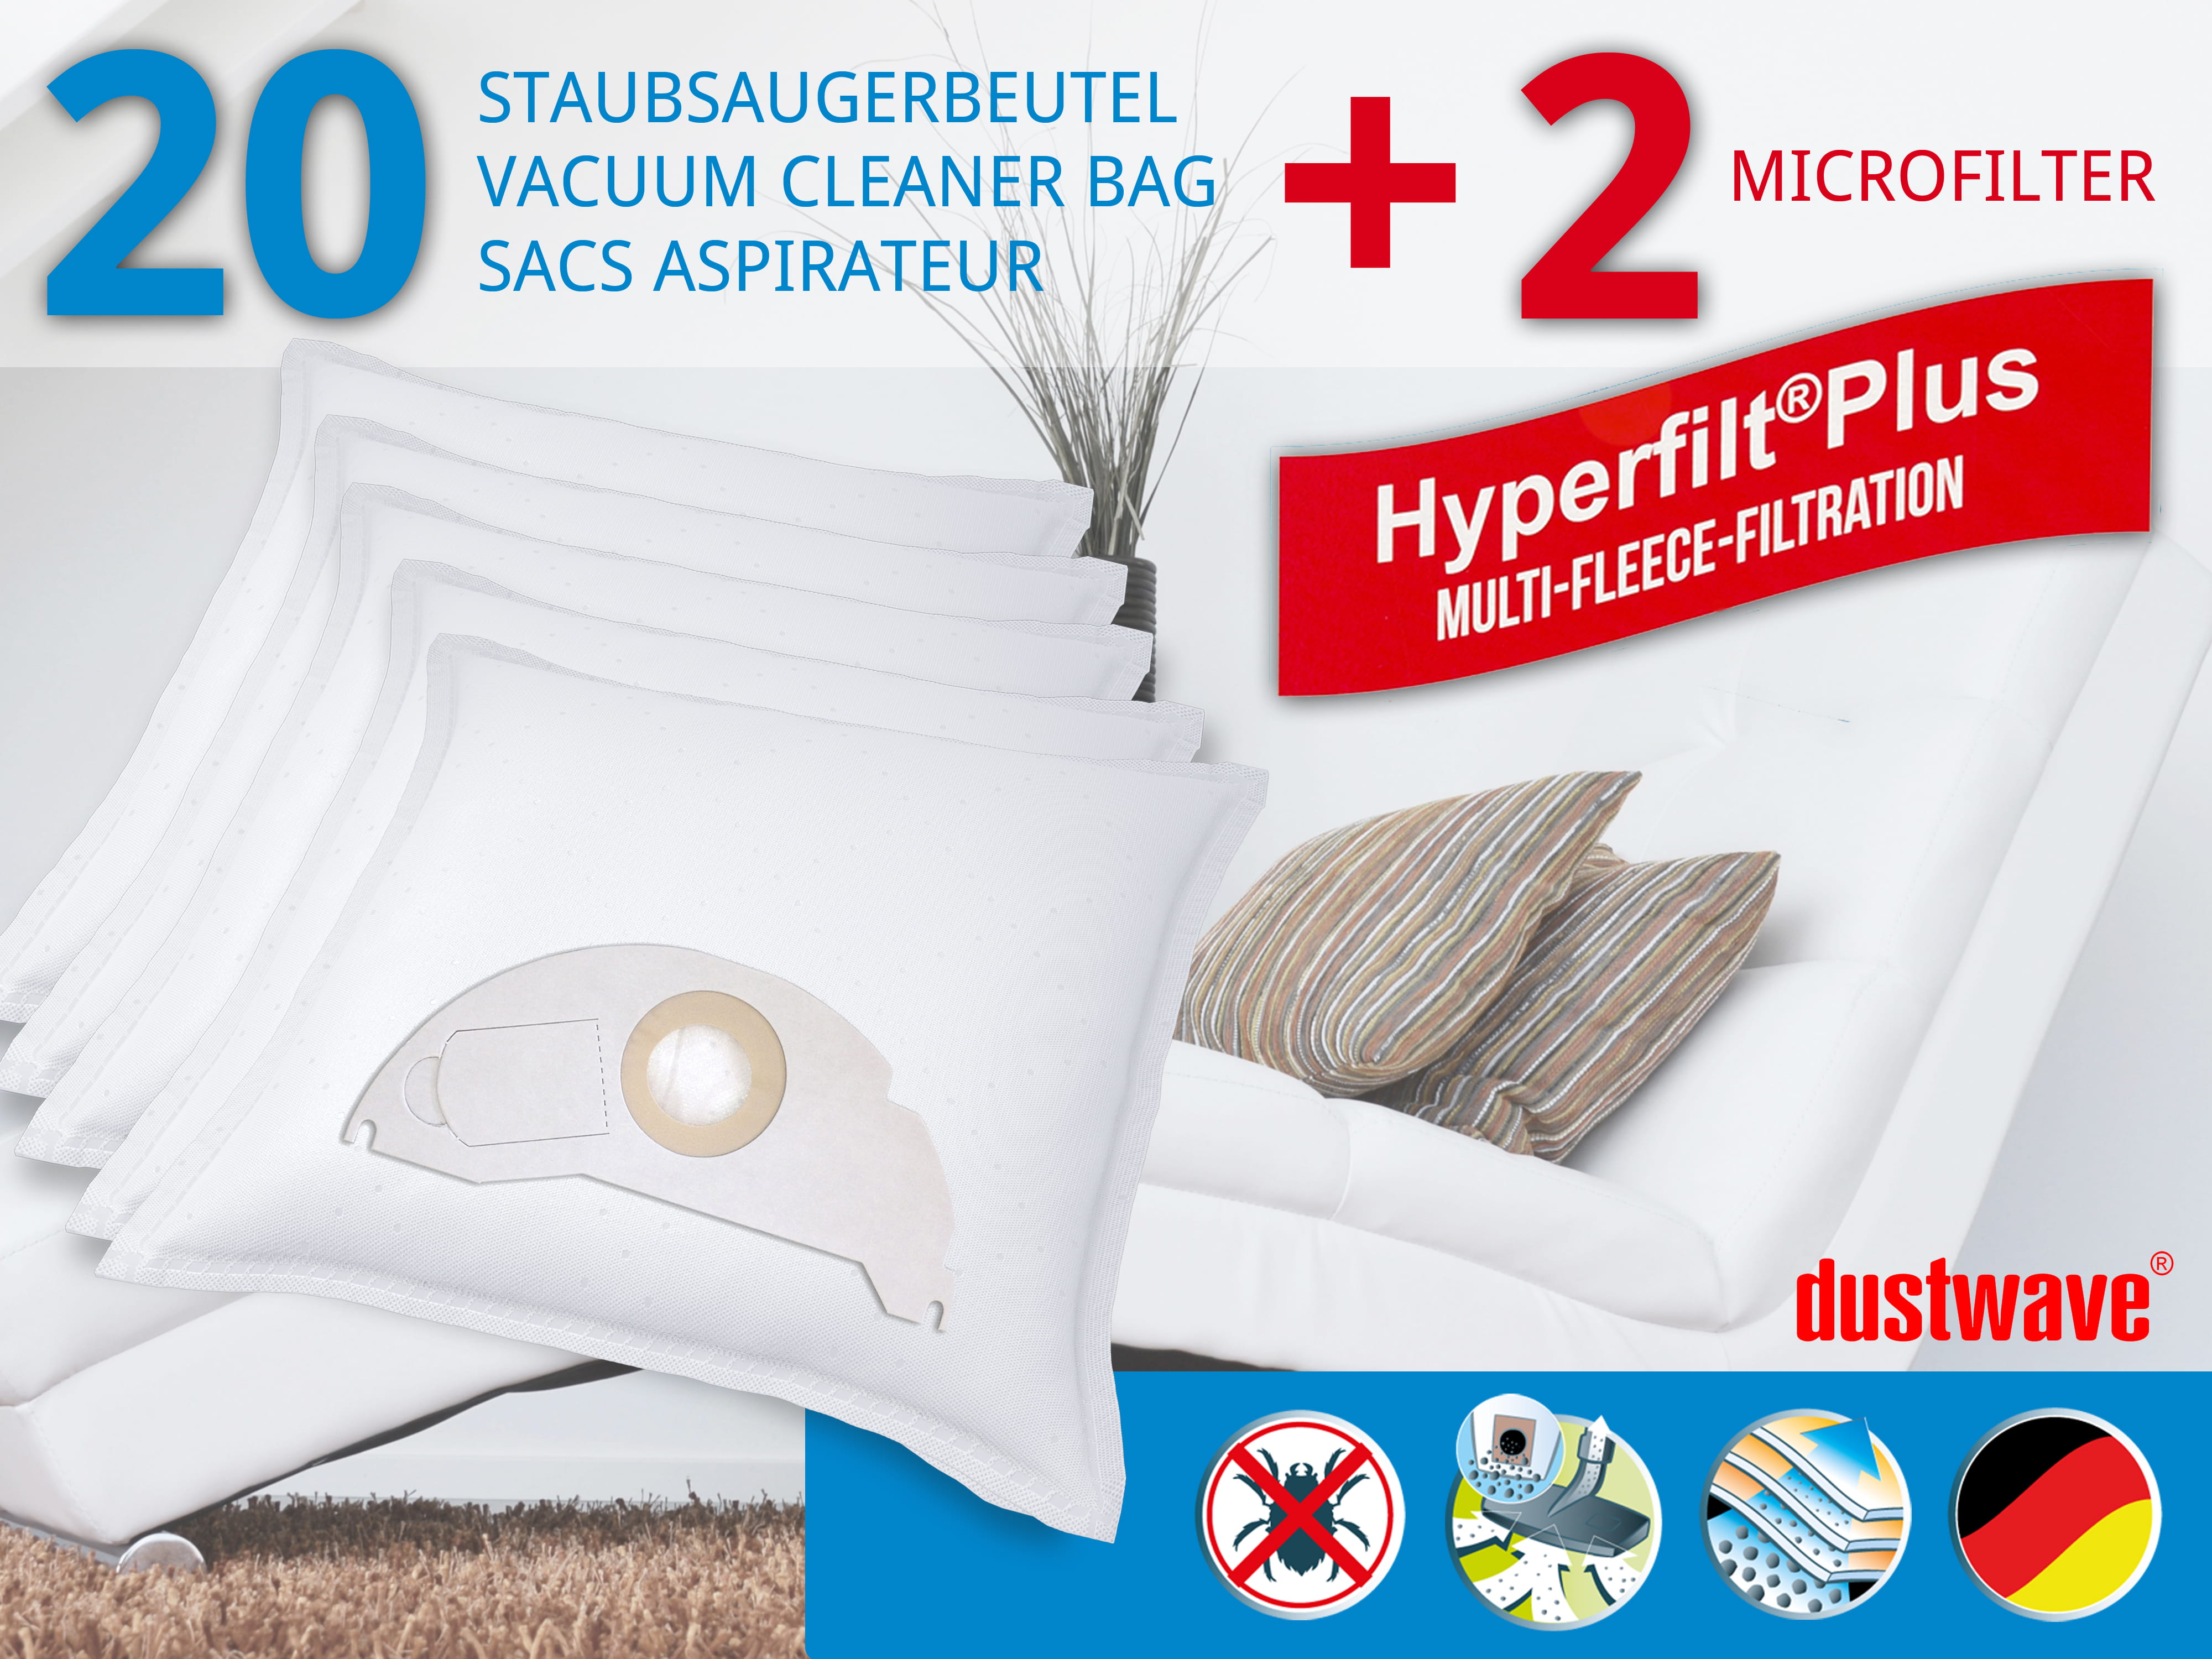 Dustwave® 20 Staubsaugerbeutel für Hoover BD S5125001 - hocheffizient, mehrlagiges Mikrovlies mit Hygieneverschluss - Made in Germany